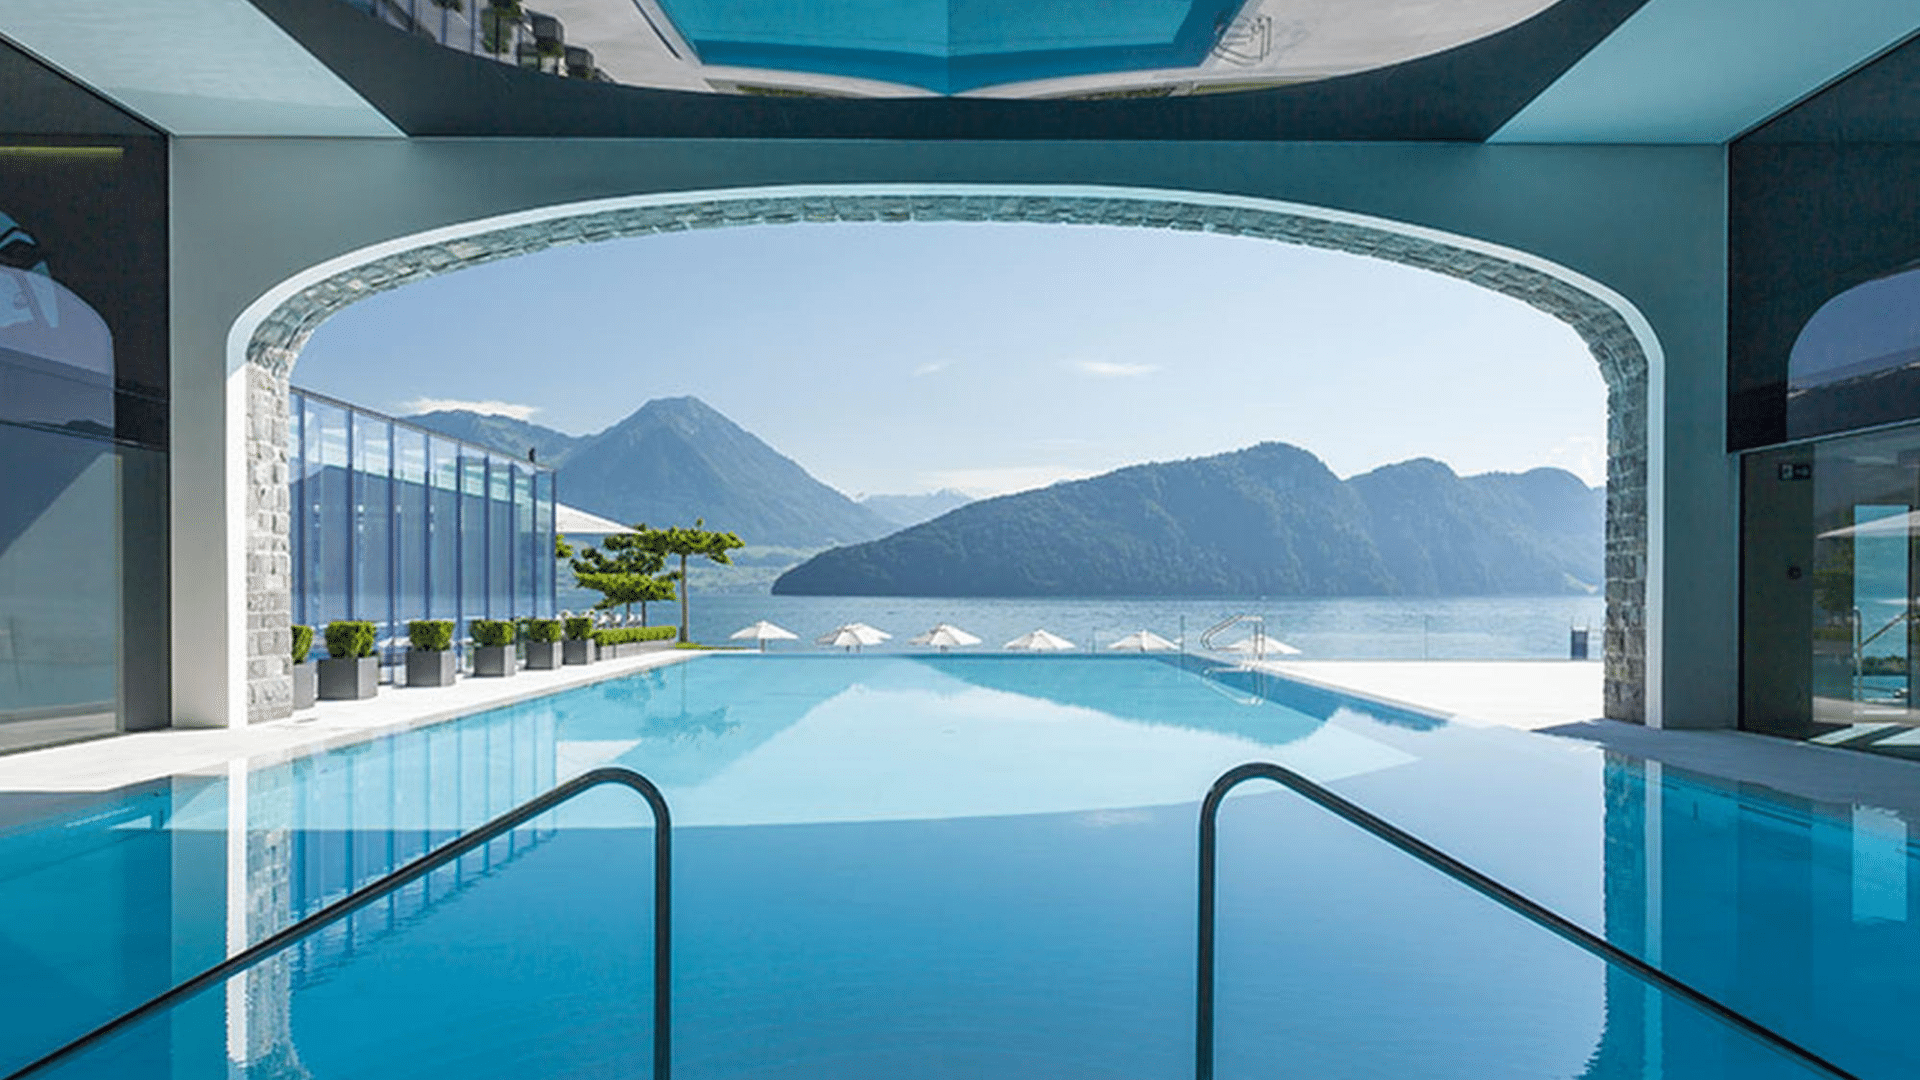 Offre estivale - nos meilleures offres d’hôtels de luxe en Suisse en août